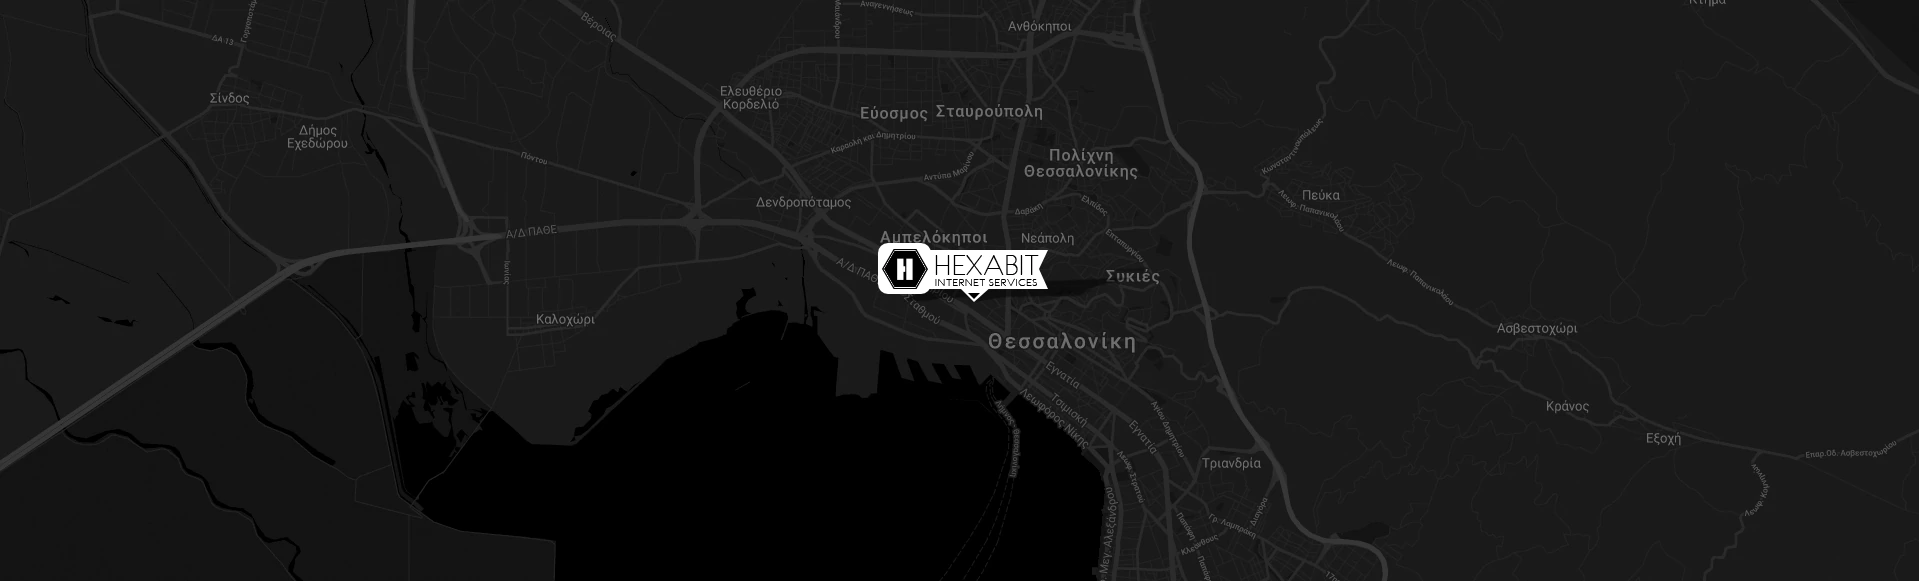 hexabit map location thessaloniki